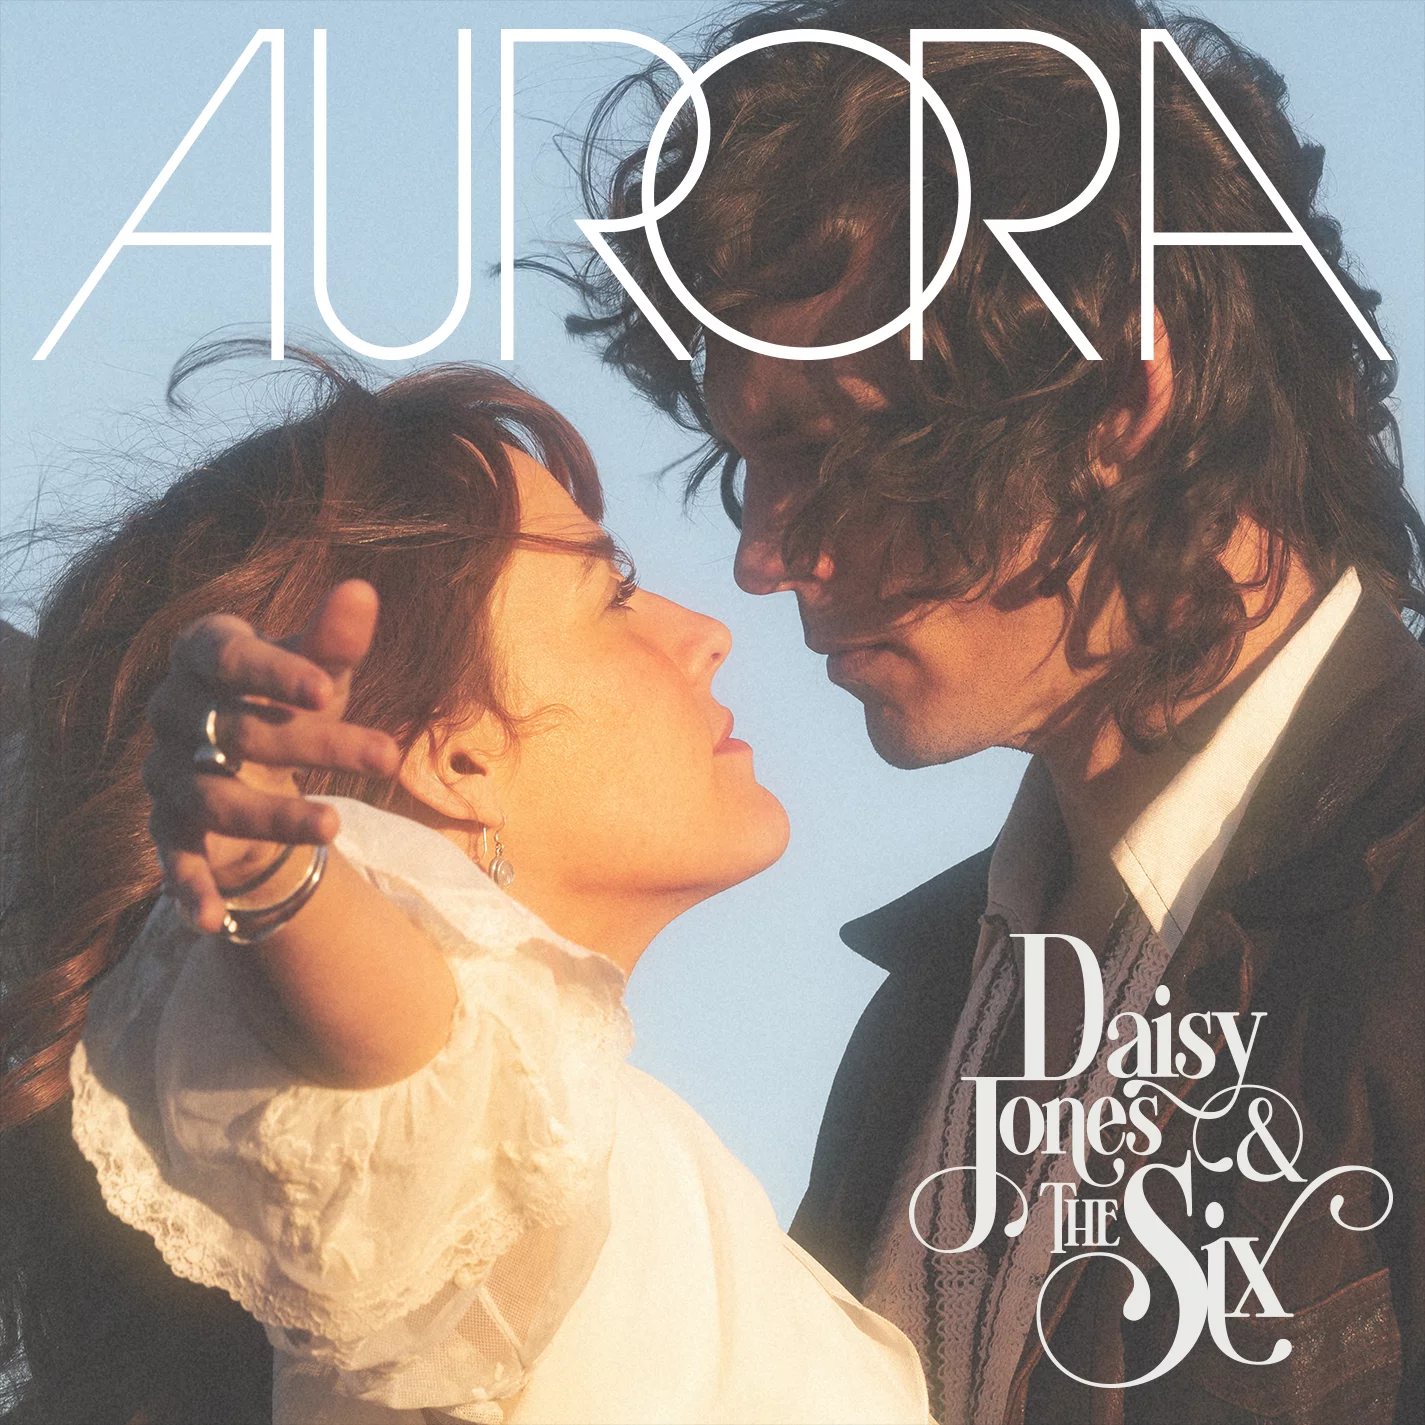 Blake Mills監修の架空のバンド Daisy Jones & the Sixがアルバム”AURORA”を3/3にリリース。